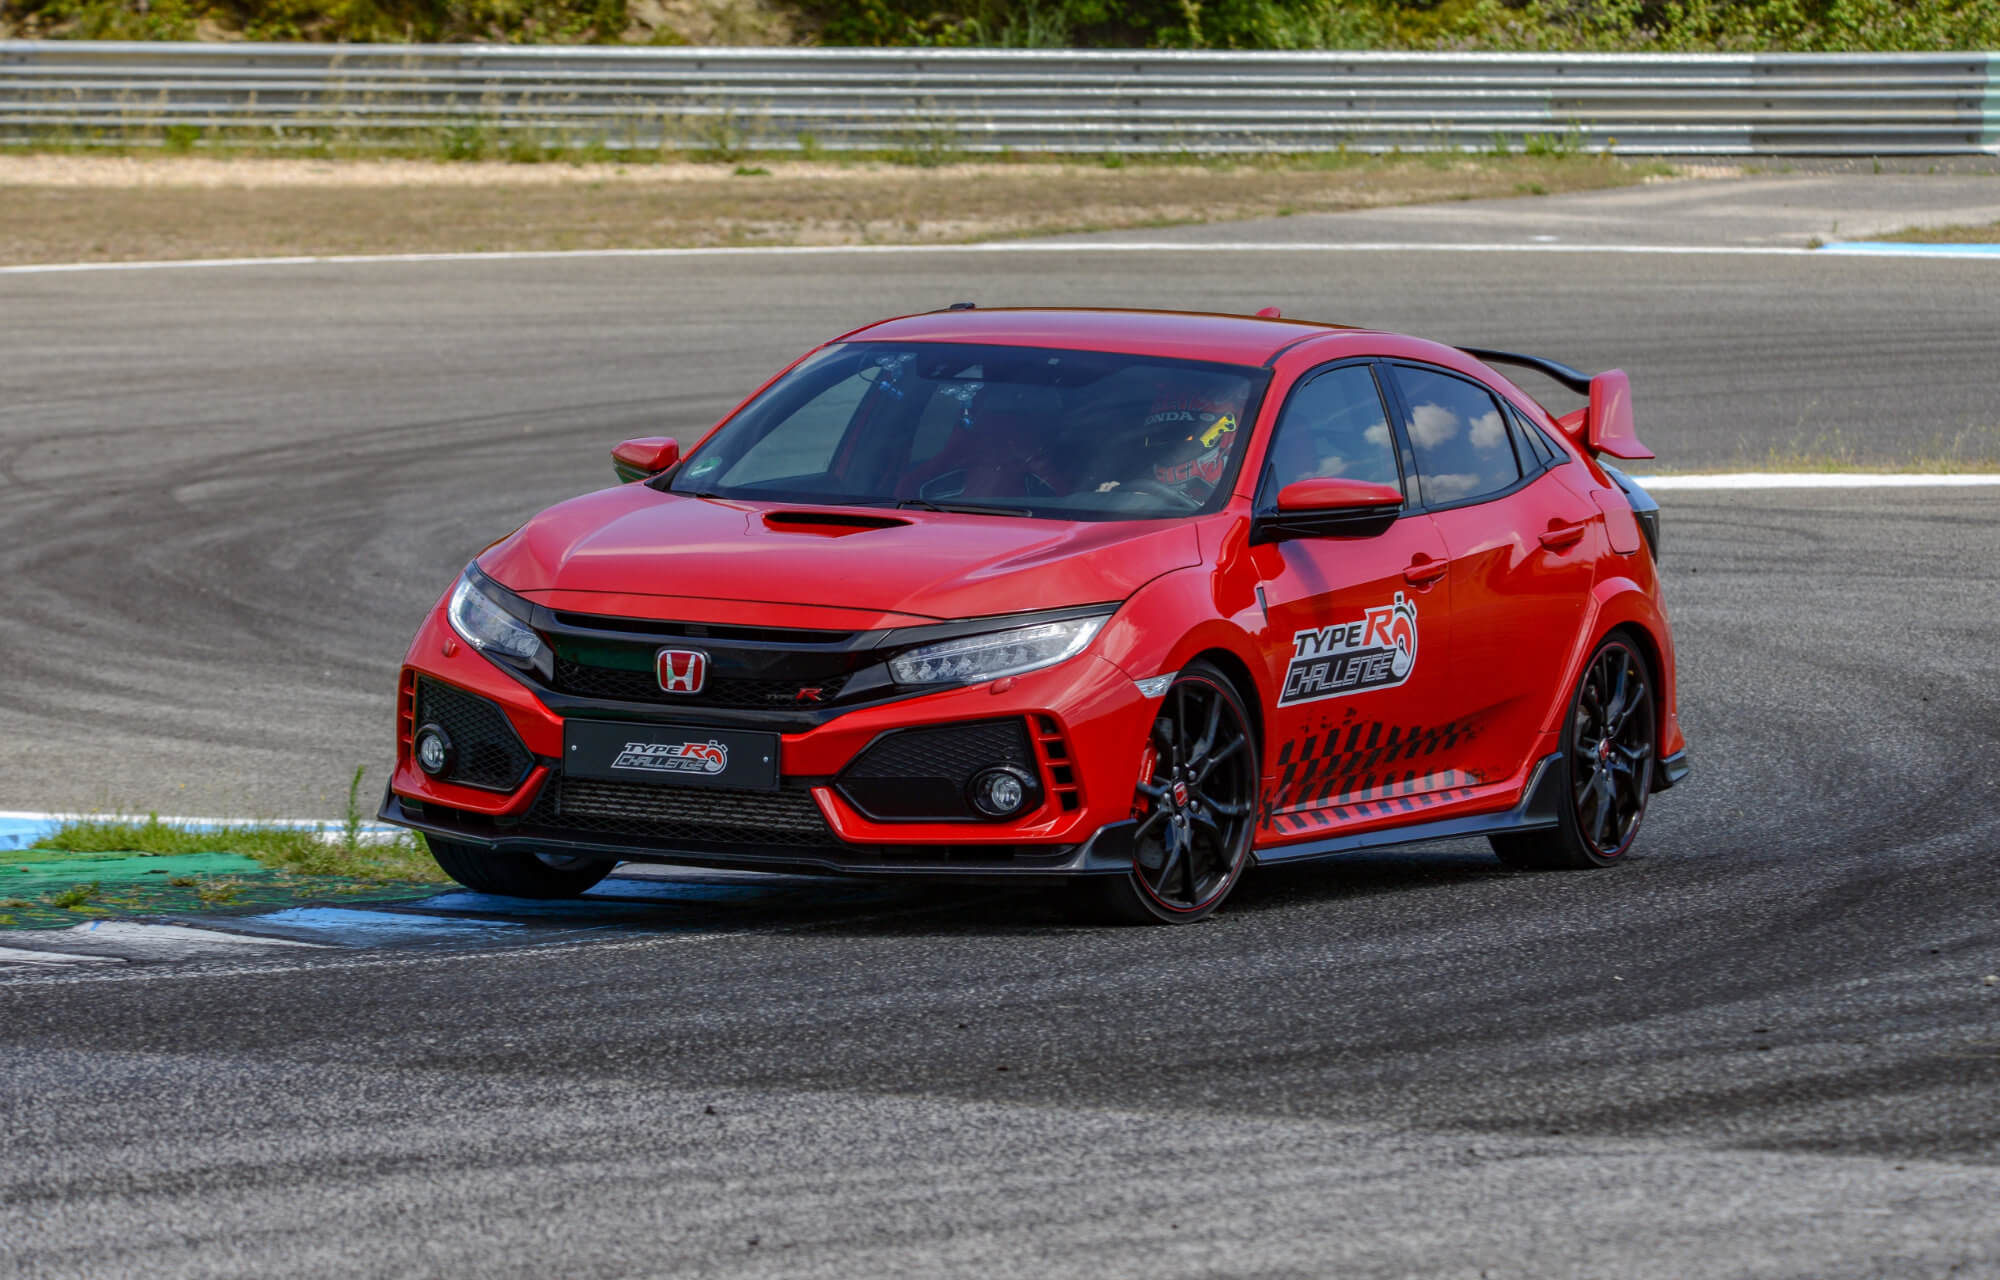 Honda Civic Type R sets new lap record at Estoril Circuit in Portugal